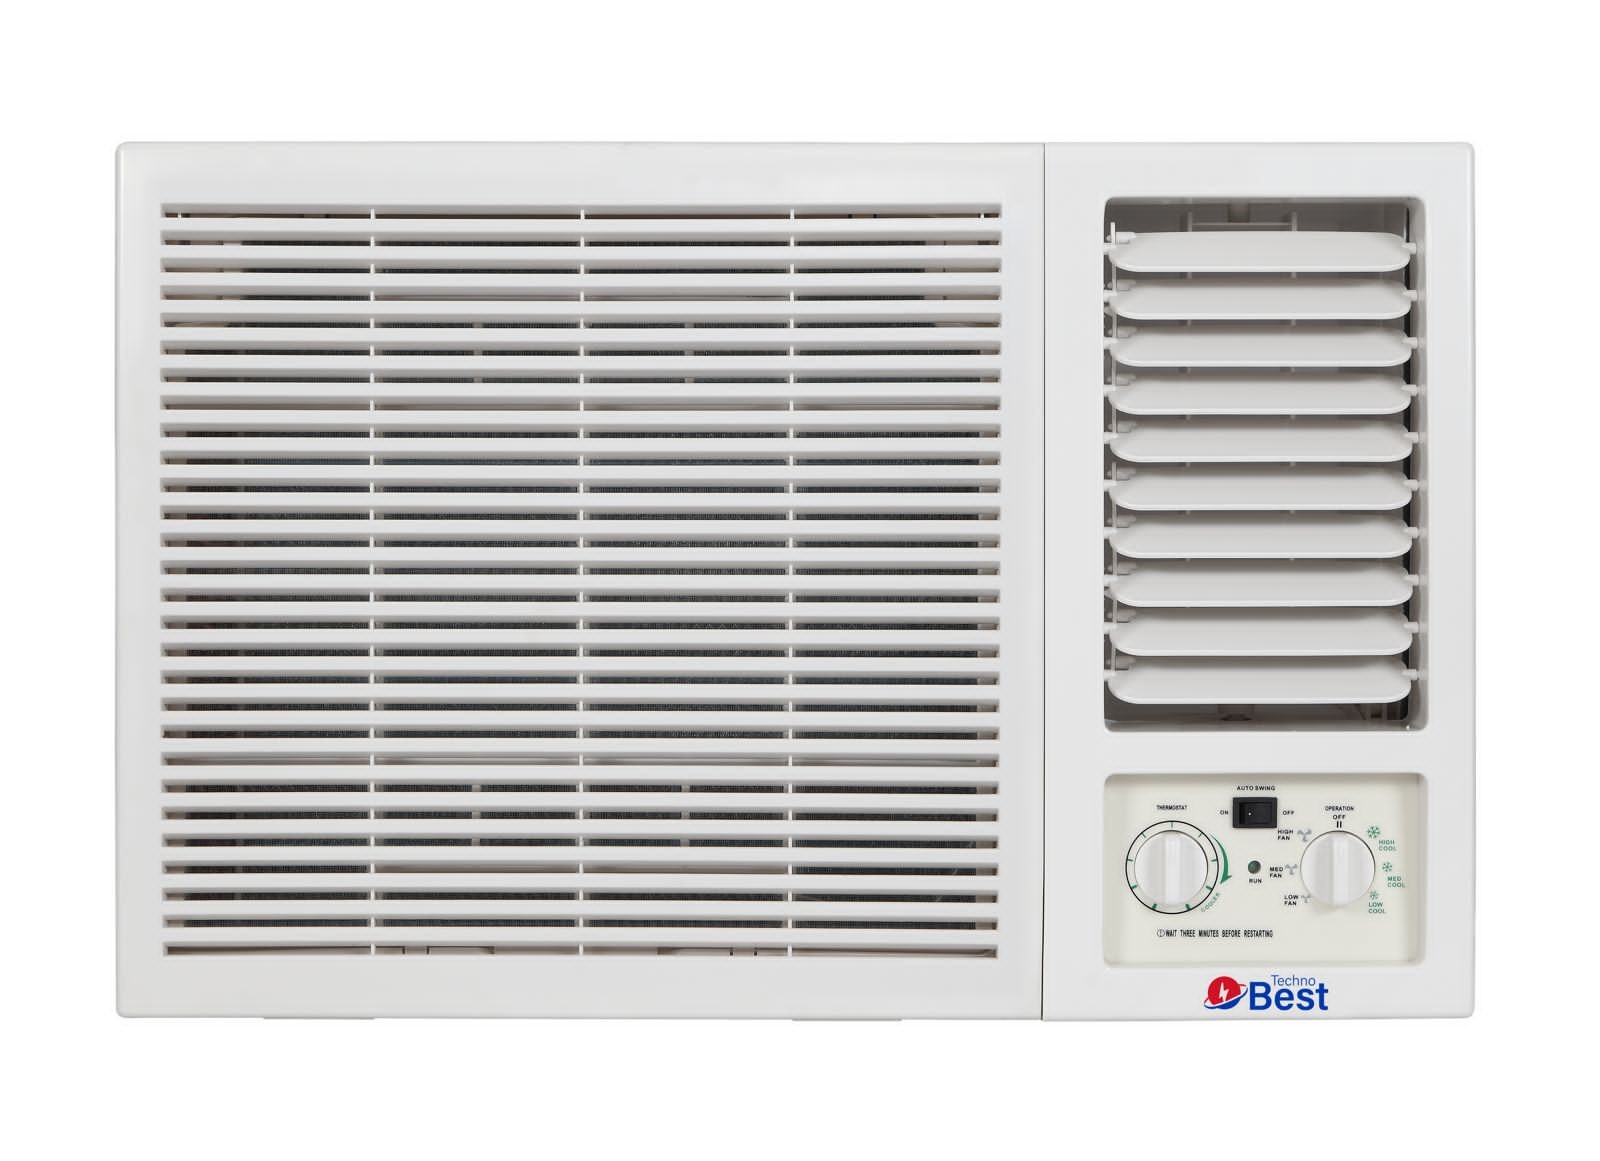 TECHNO BEST Window Air Conditioner, 18000 BTU, Cold, Quiet Sound - BWAC-018C